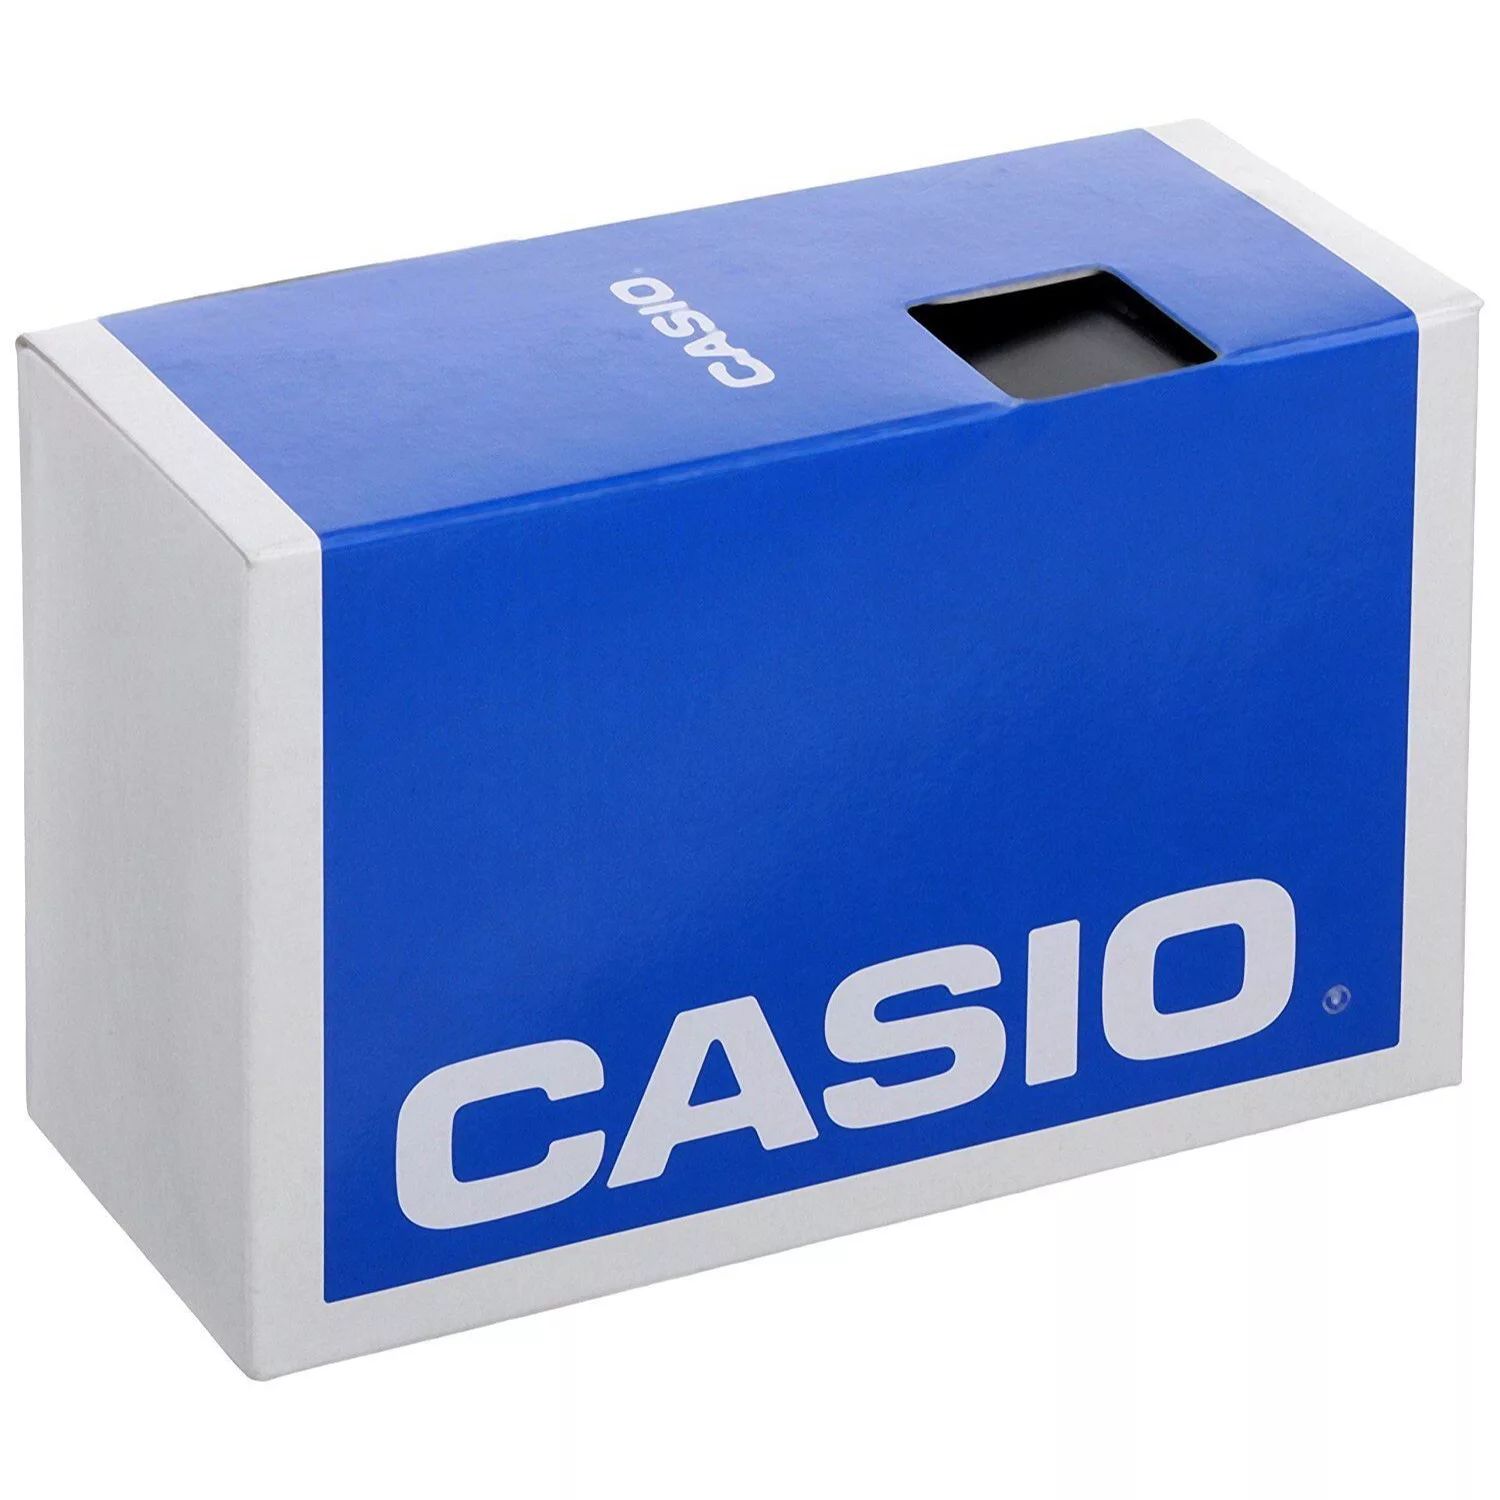 Мужские сверхмощные металлические цифровые часы Casio casio